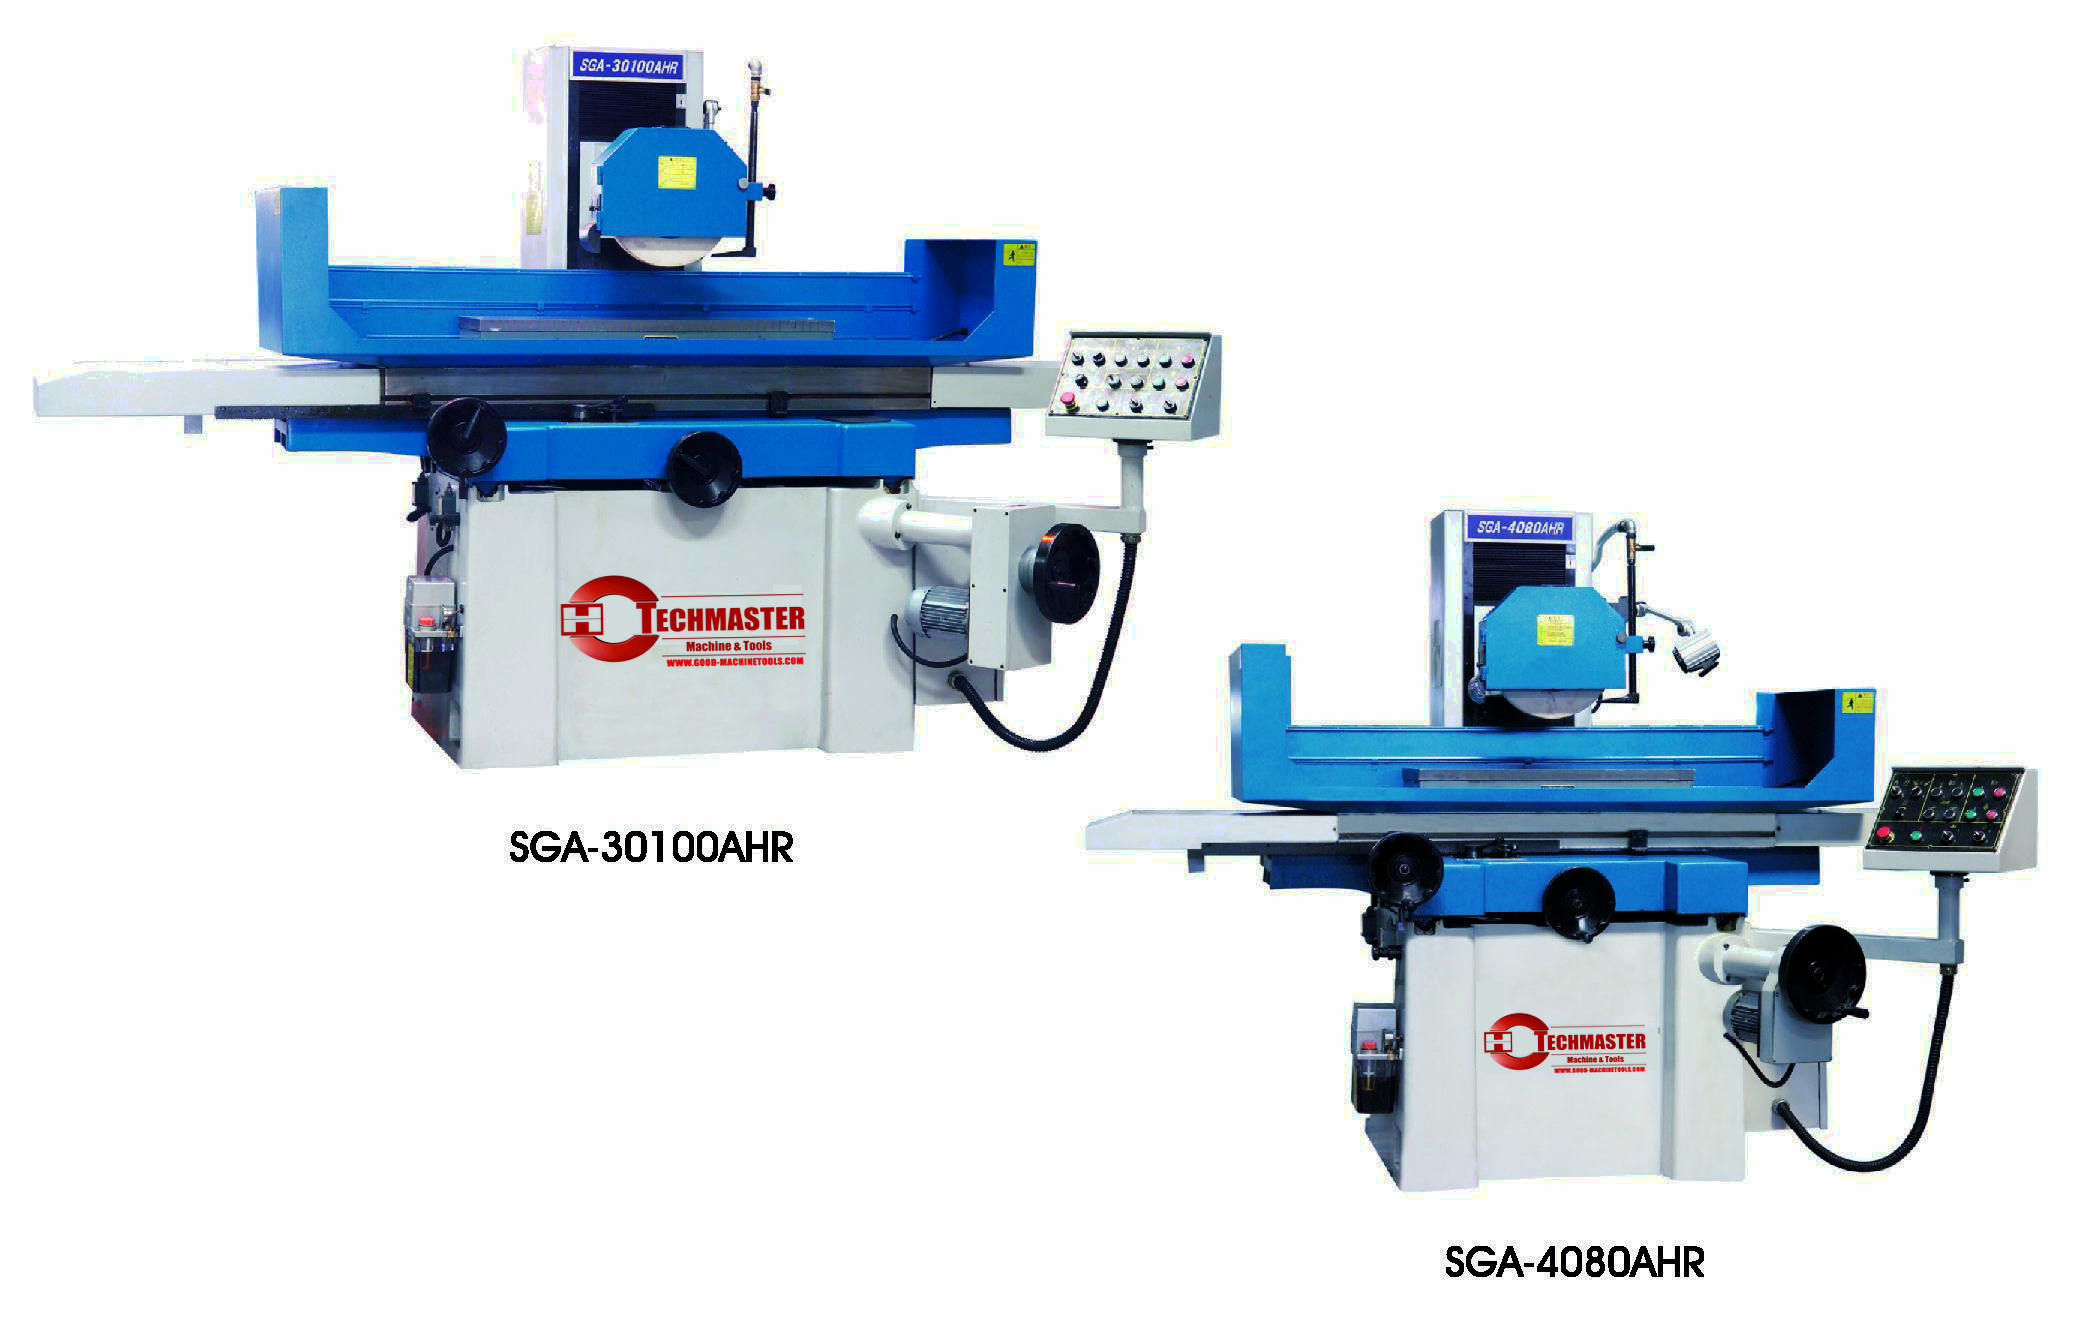 SGA-4080AHR